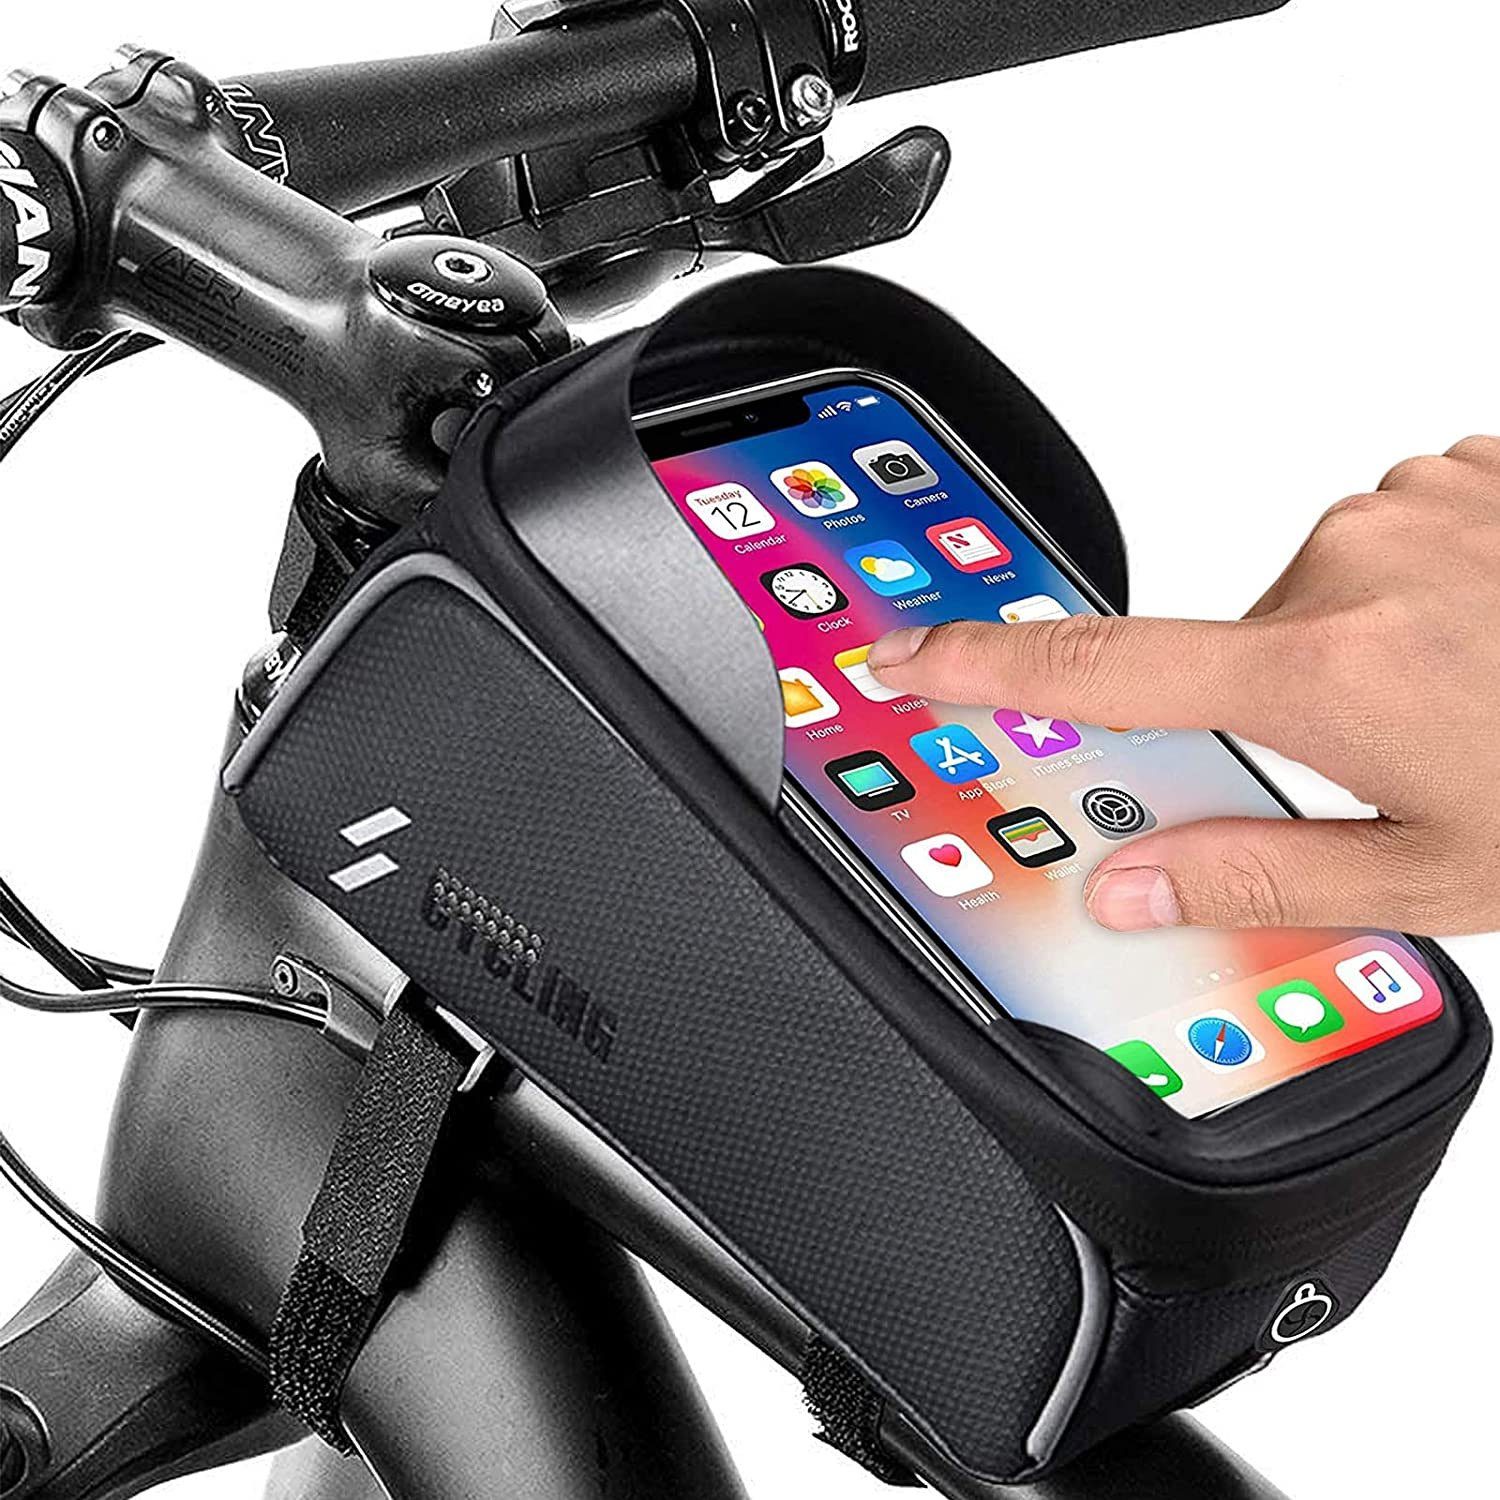 für Smartphones unter 7 Zoll Innerhalb mit Kopfhörerloch Qomolo Fahrrad Rahmentasche Wasserdicht Farhrradlenkertasche Fahrrad Handytasche mit Hochempfindlicher Touchscreen 